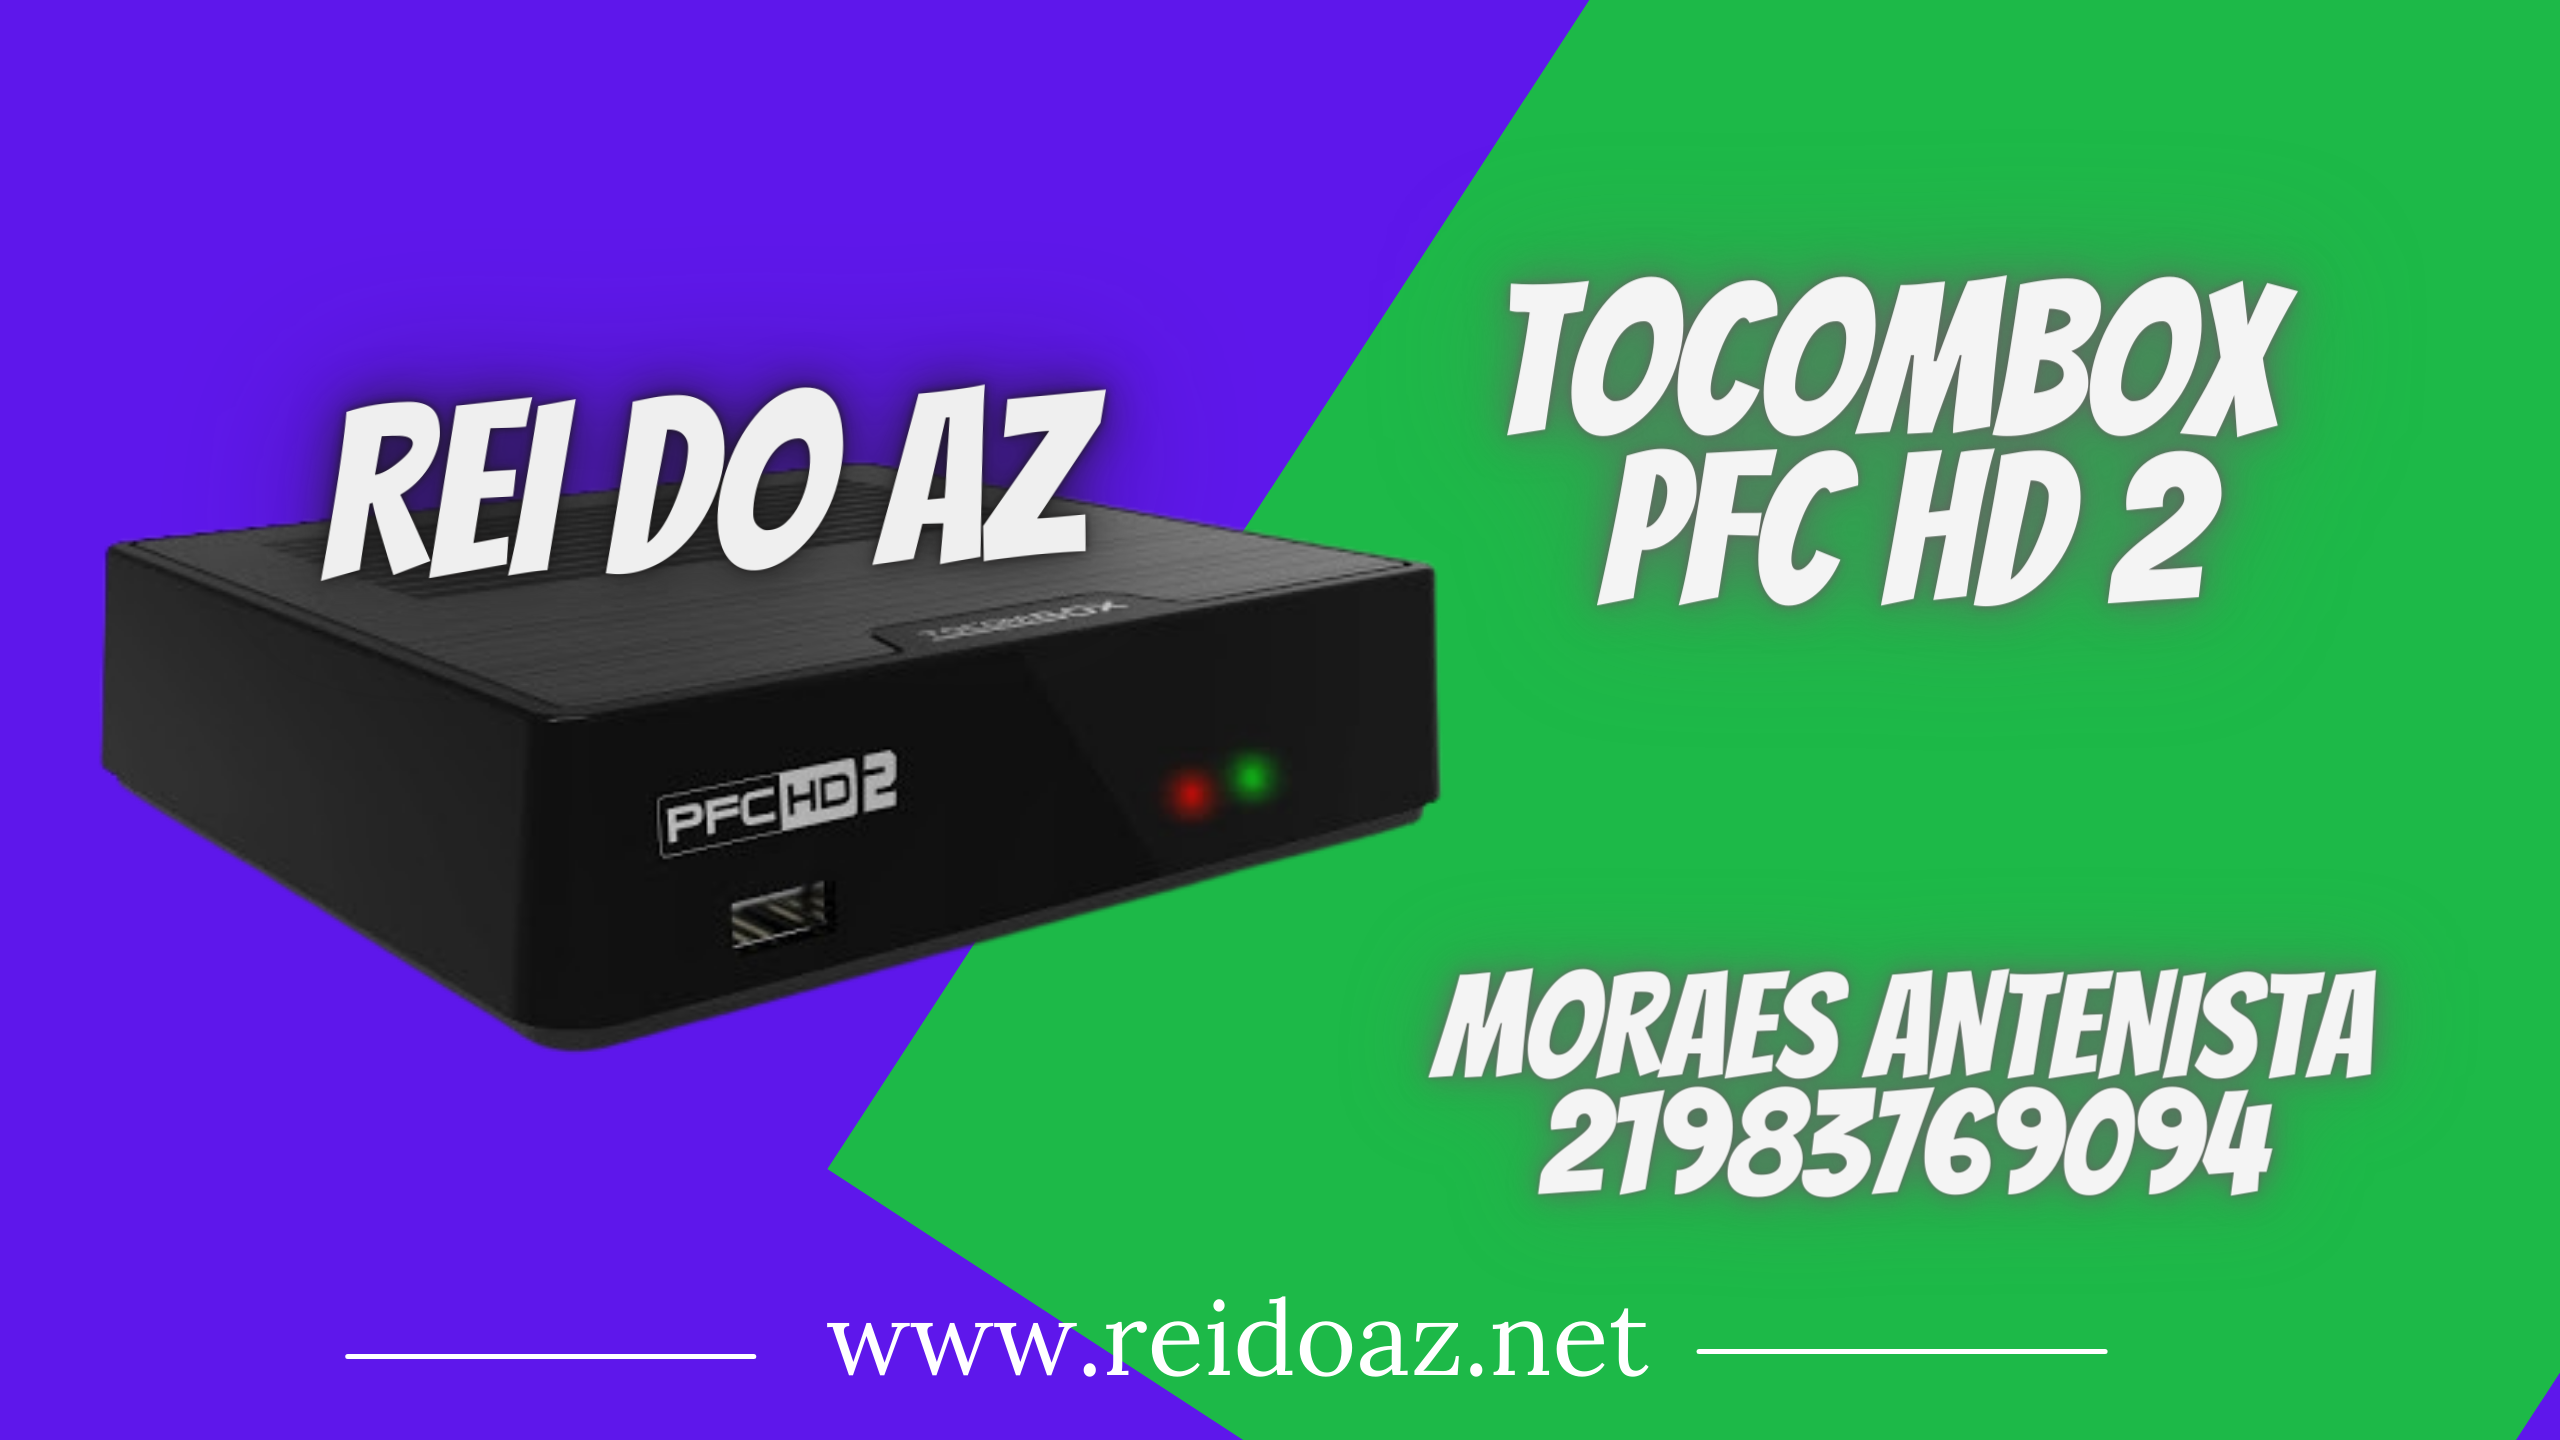 Liberada: Atualização Tocombox PFC HD 2 V02.009